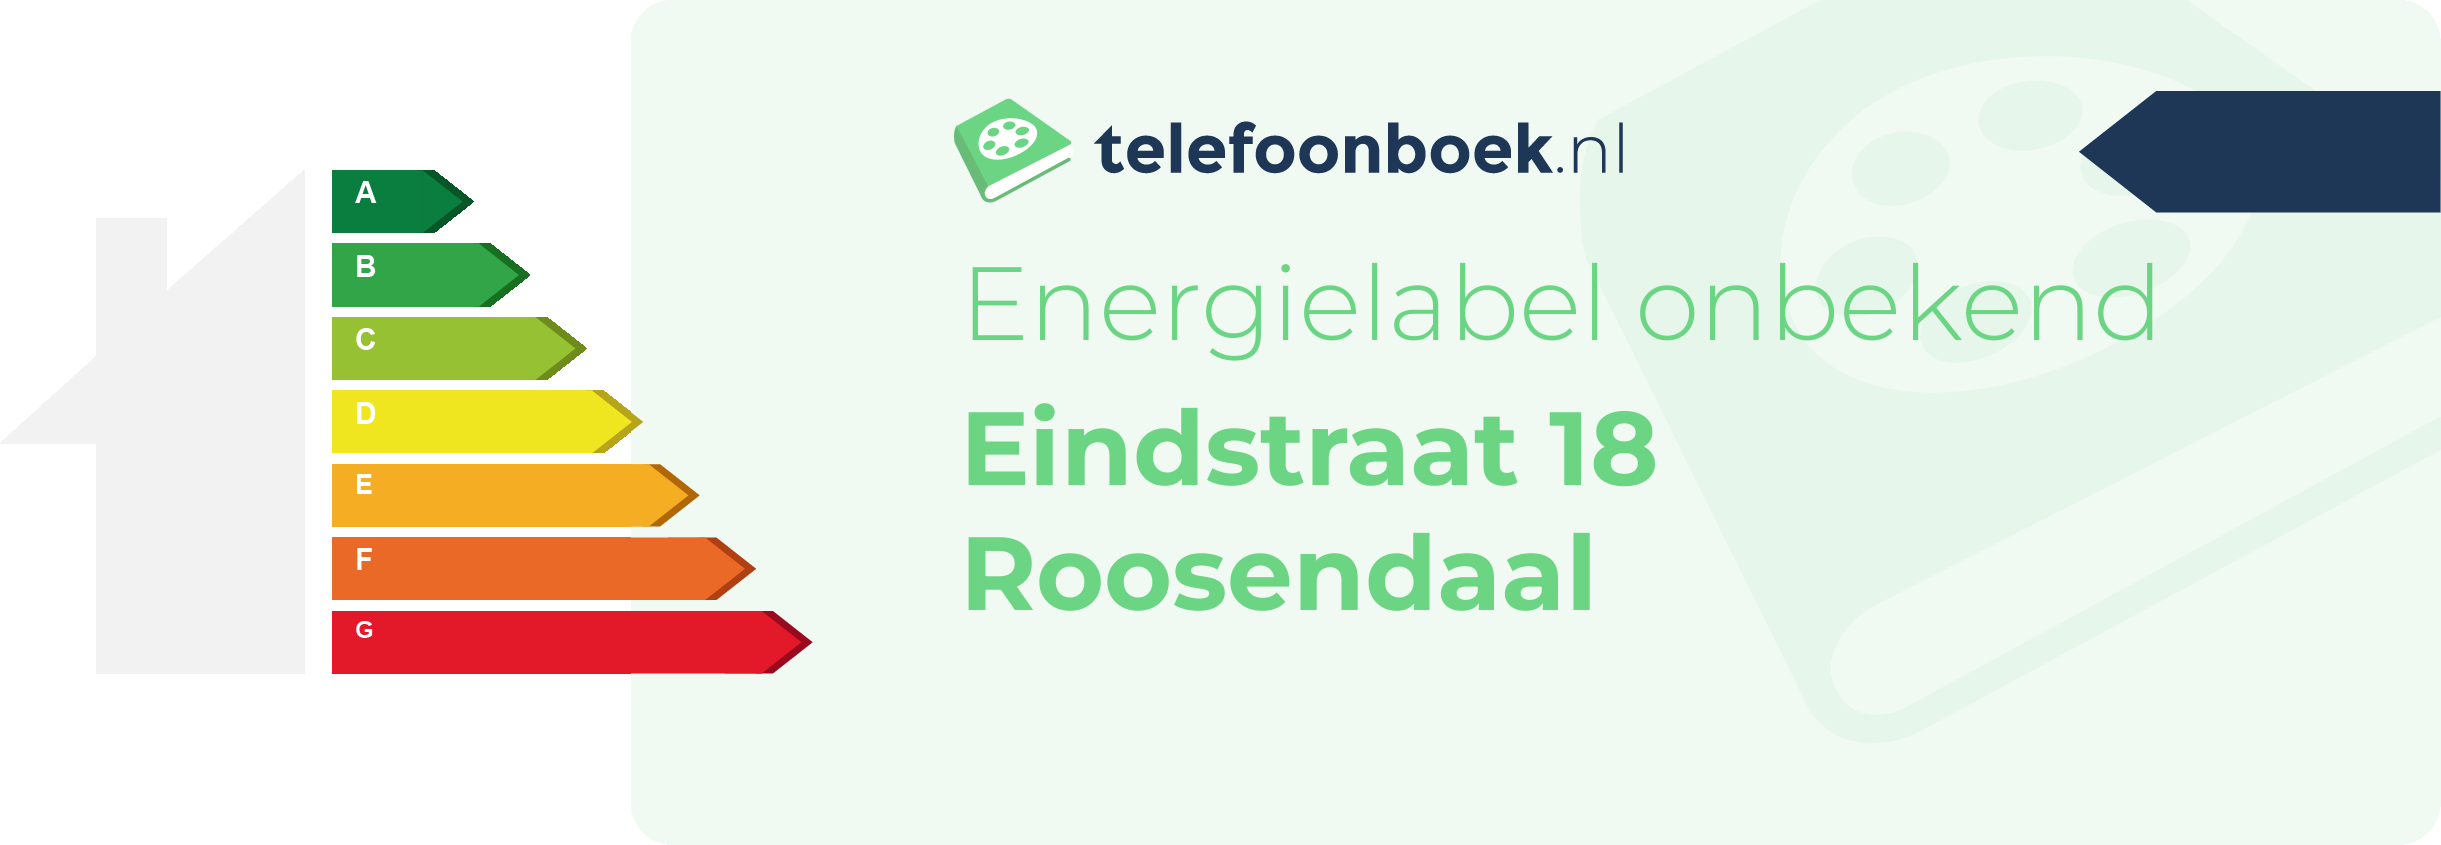 Energielabel Eindstraat 18 Roosendaal